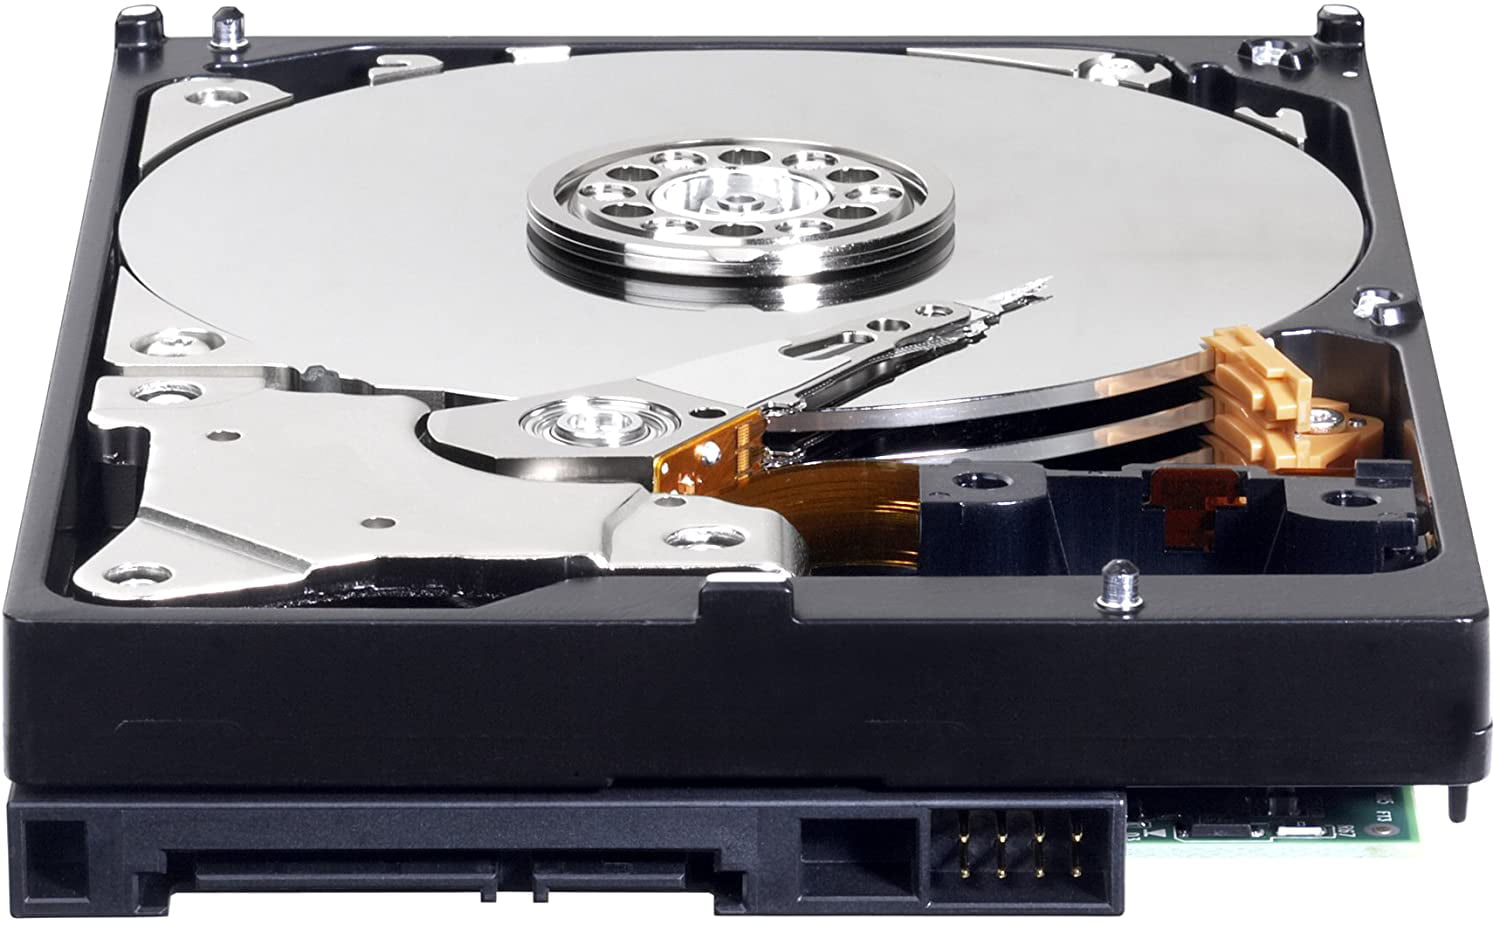 WD Blue 1TB Desktop Hard Disk Drive - 7200 RPM SATA 6 Gb/s 64MB